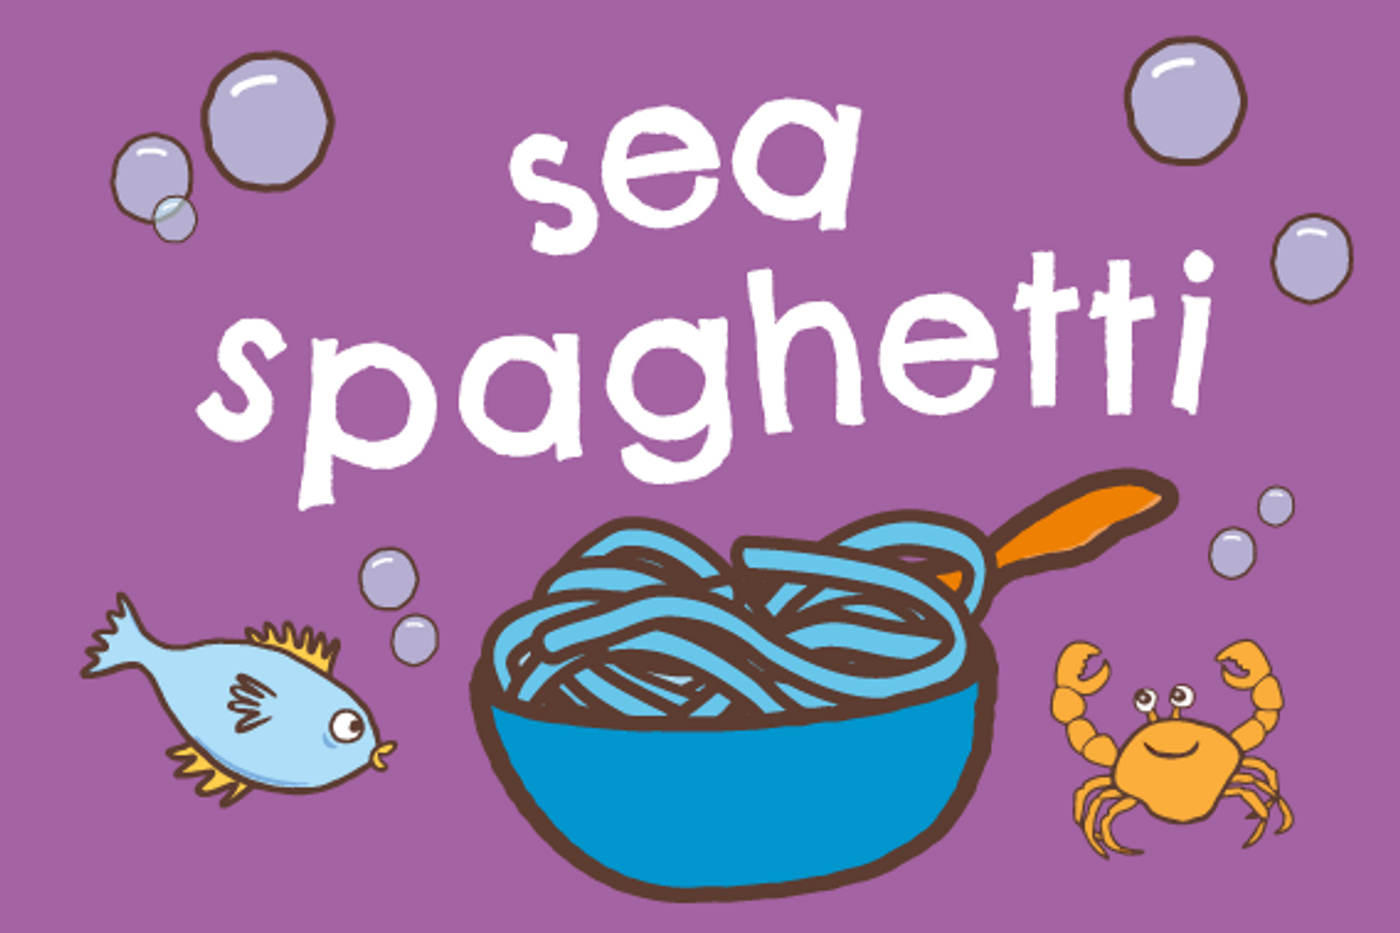 Sea spaghetti sensory game